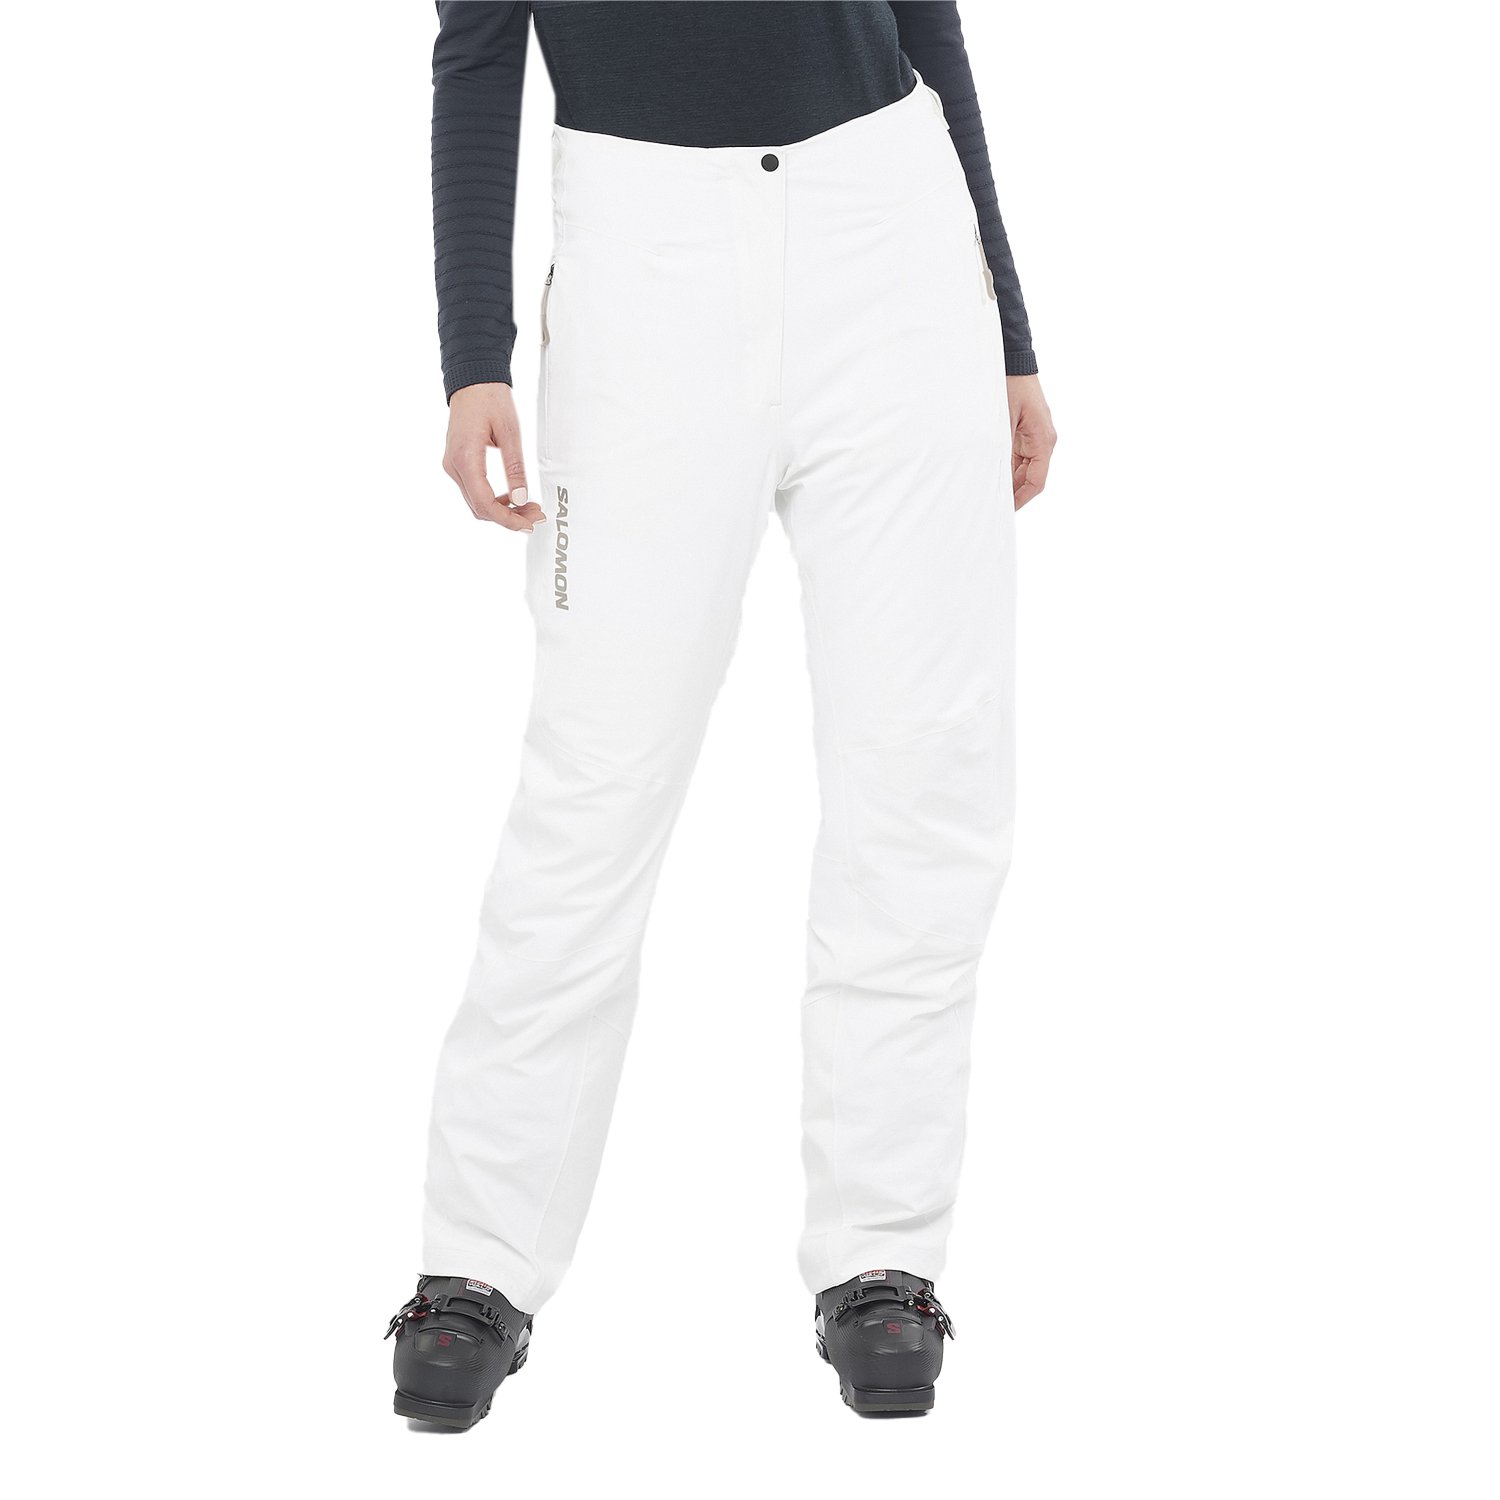 Salomon S/Max Warm Kadın Kayak Pantolonu - Beyaz - 1